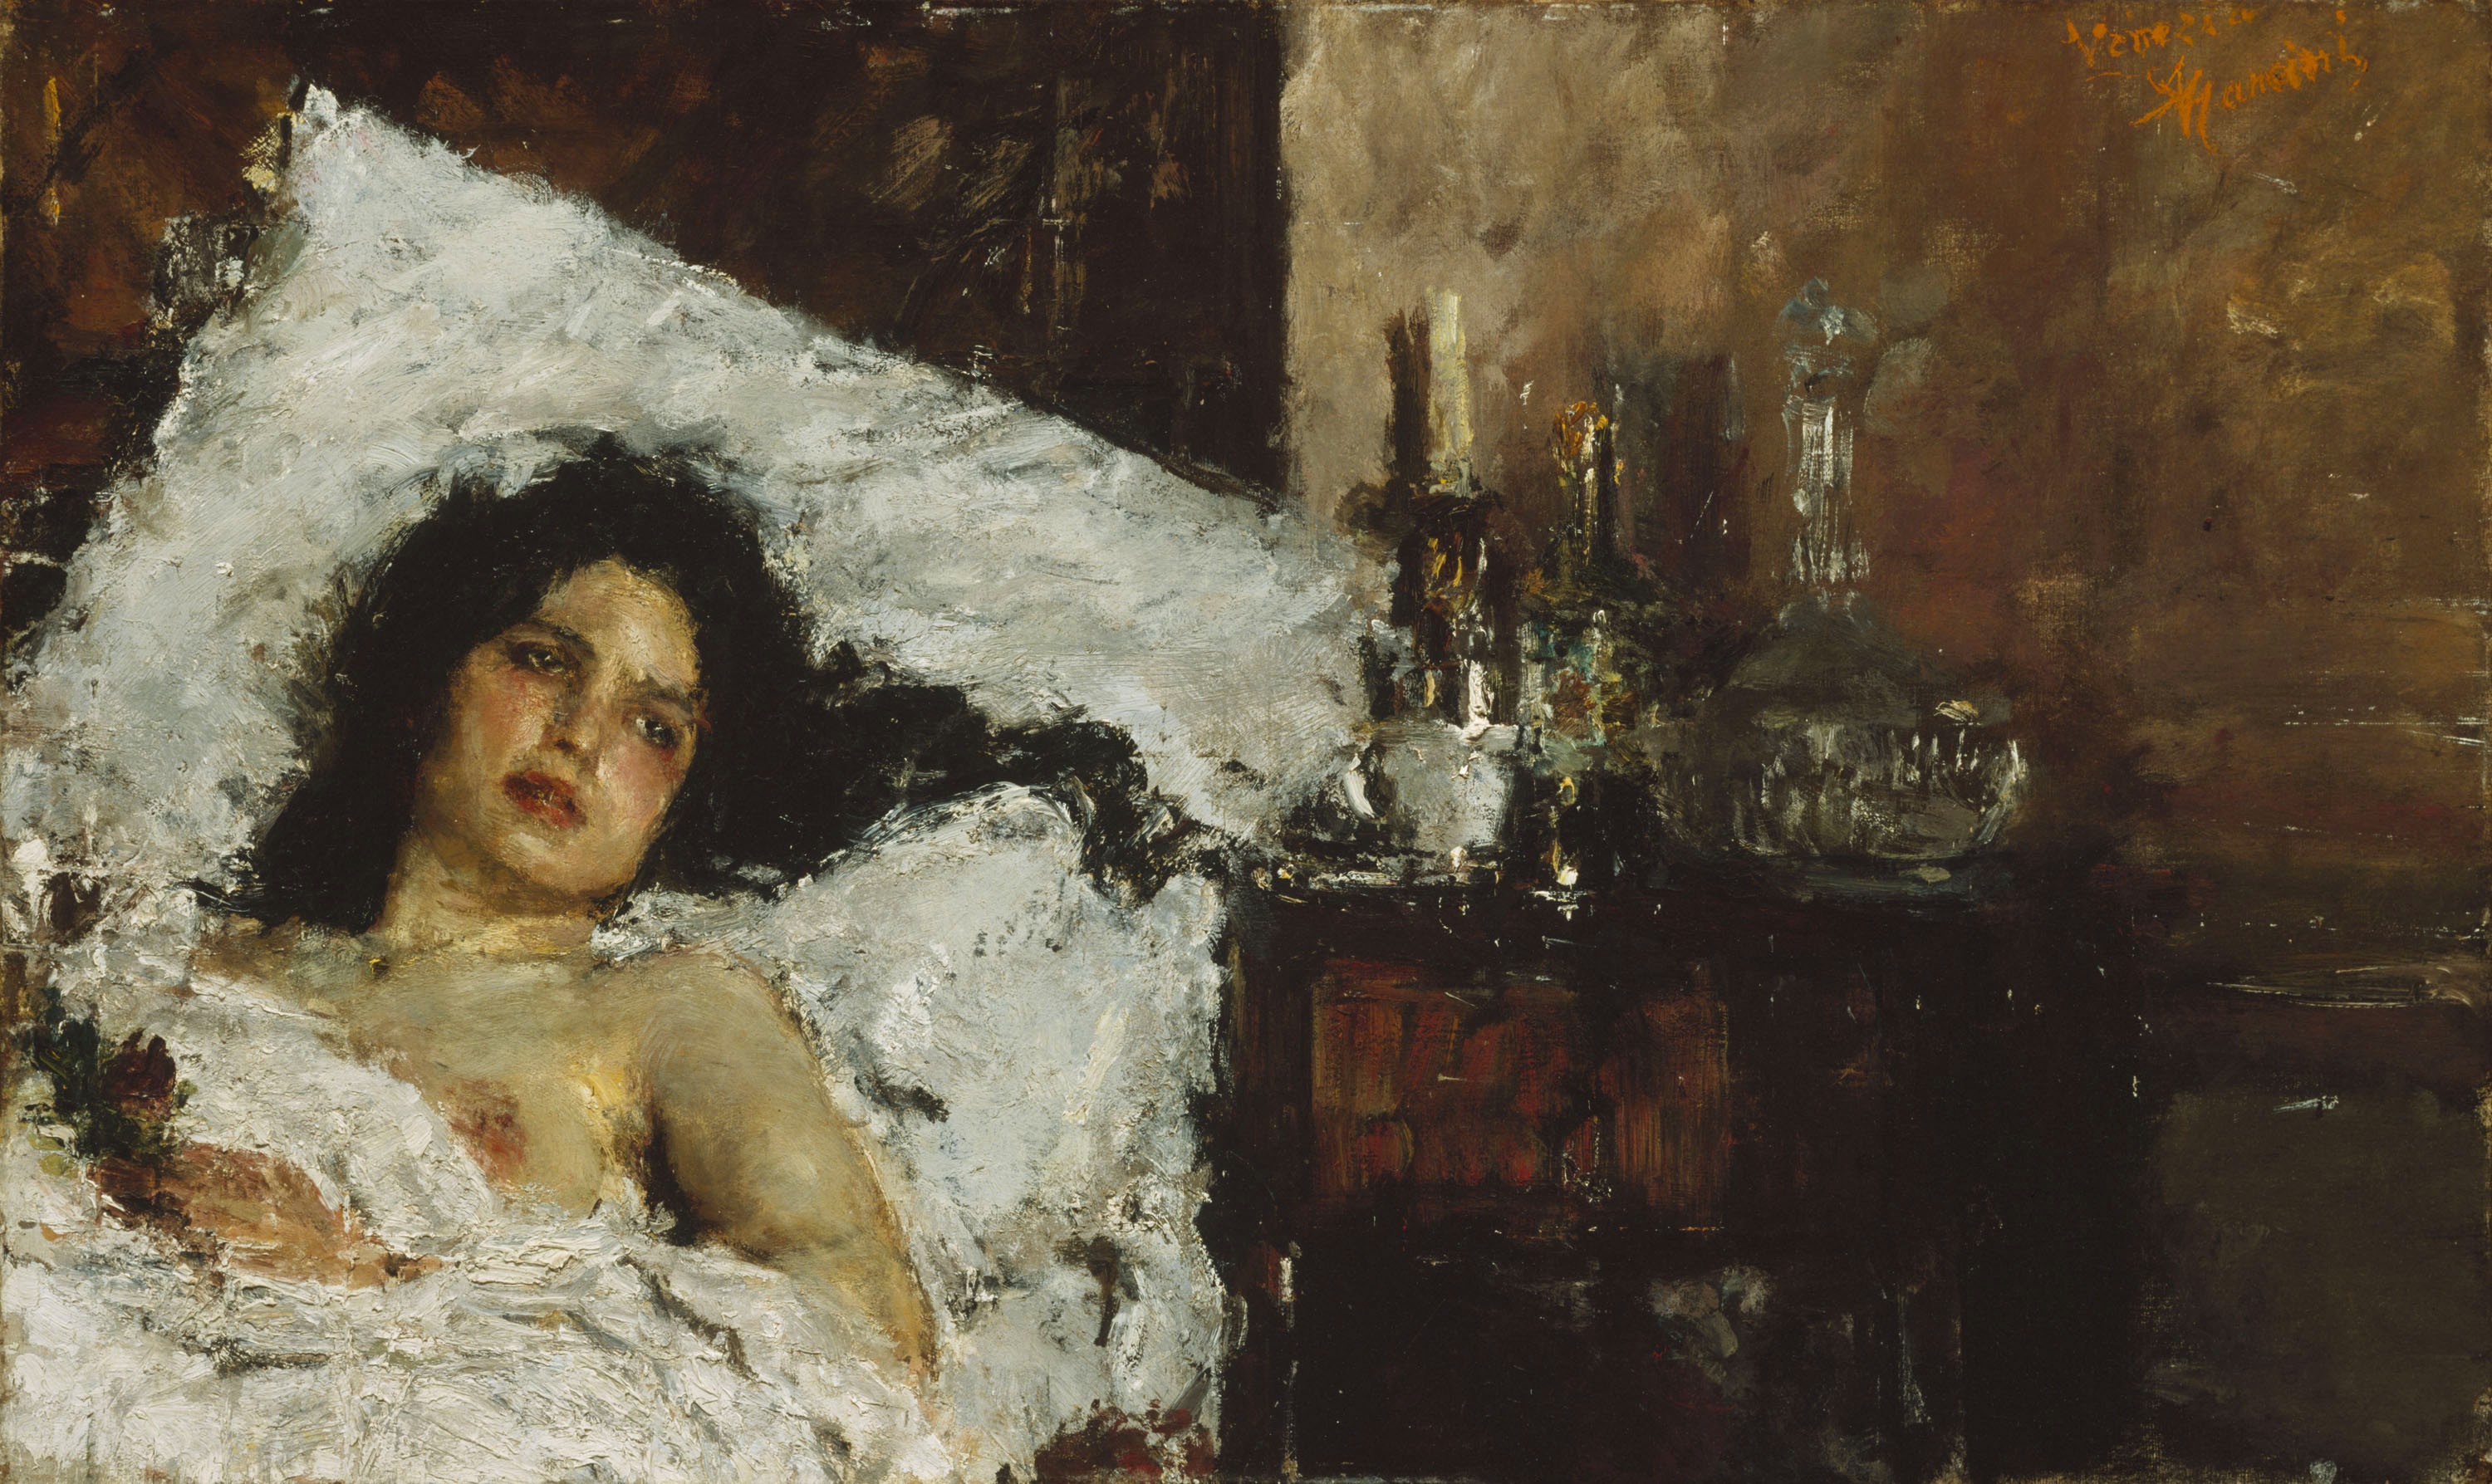 Odpočinek by Antonio Mancini - cca 1887 - 60,9 x 100 cm 